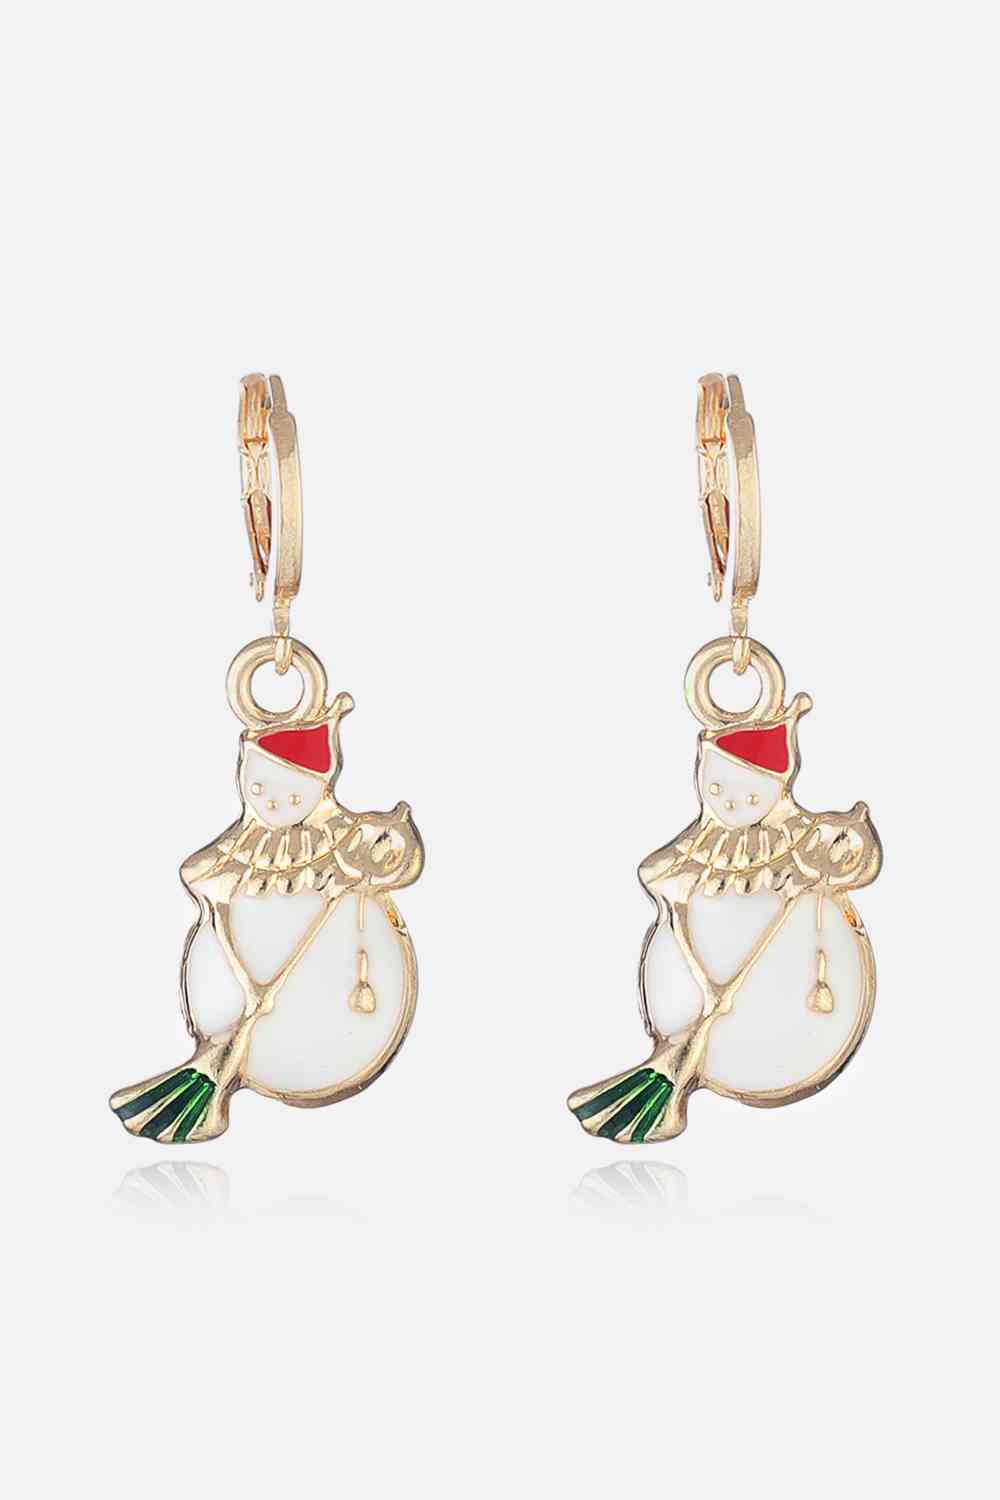 Christmas Theme Alloy Earrings - Style D / One Size - Women’s Jewelry - Earrings - 22 - 2024